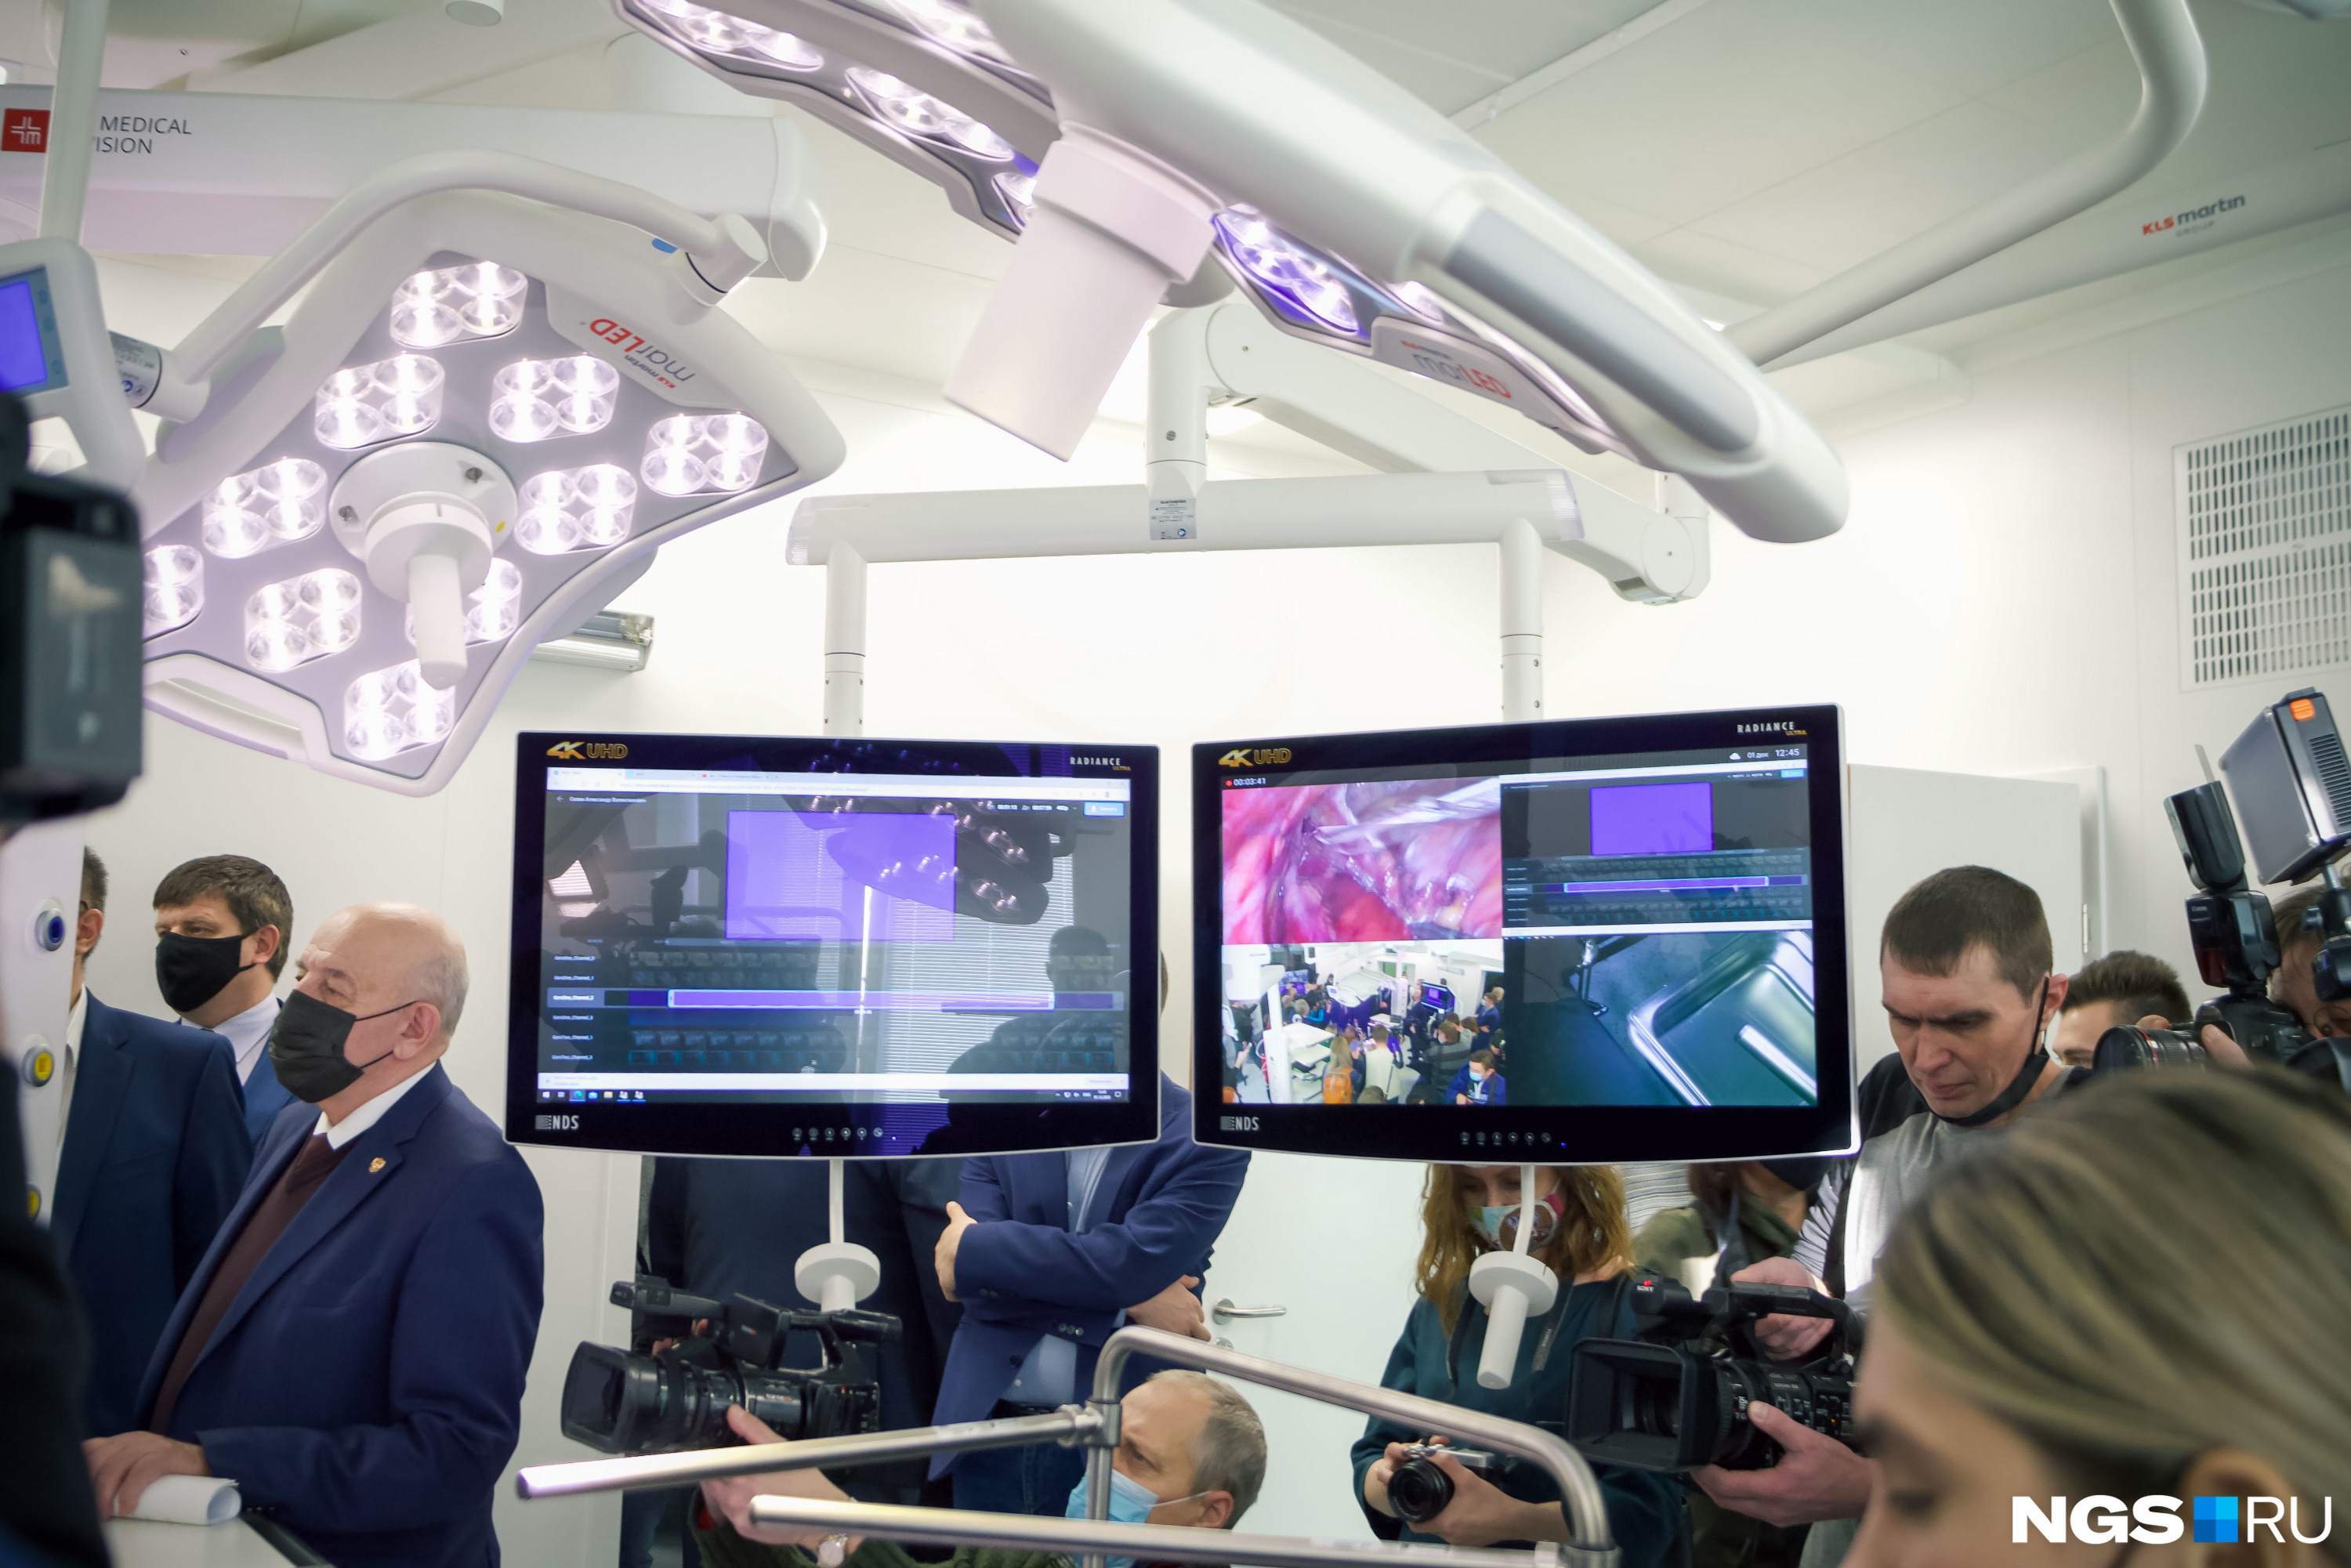 Также в операционной установлены видеосистемы, которые дают доступ врачам наблюдать за ходом операции удаленно